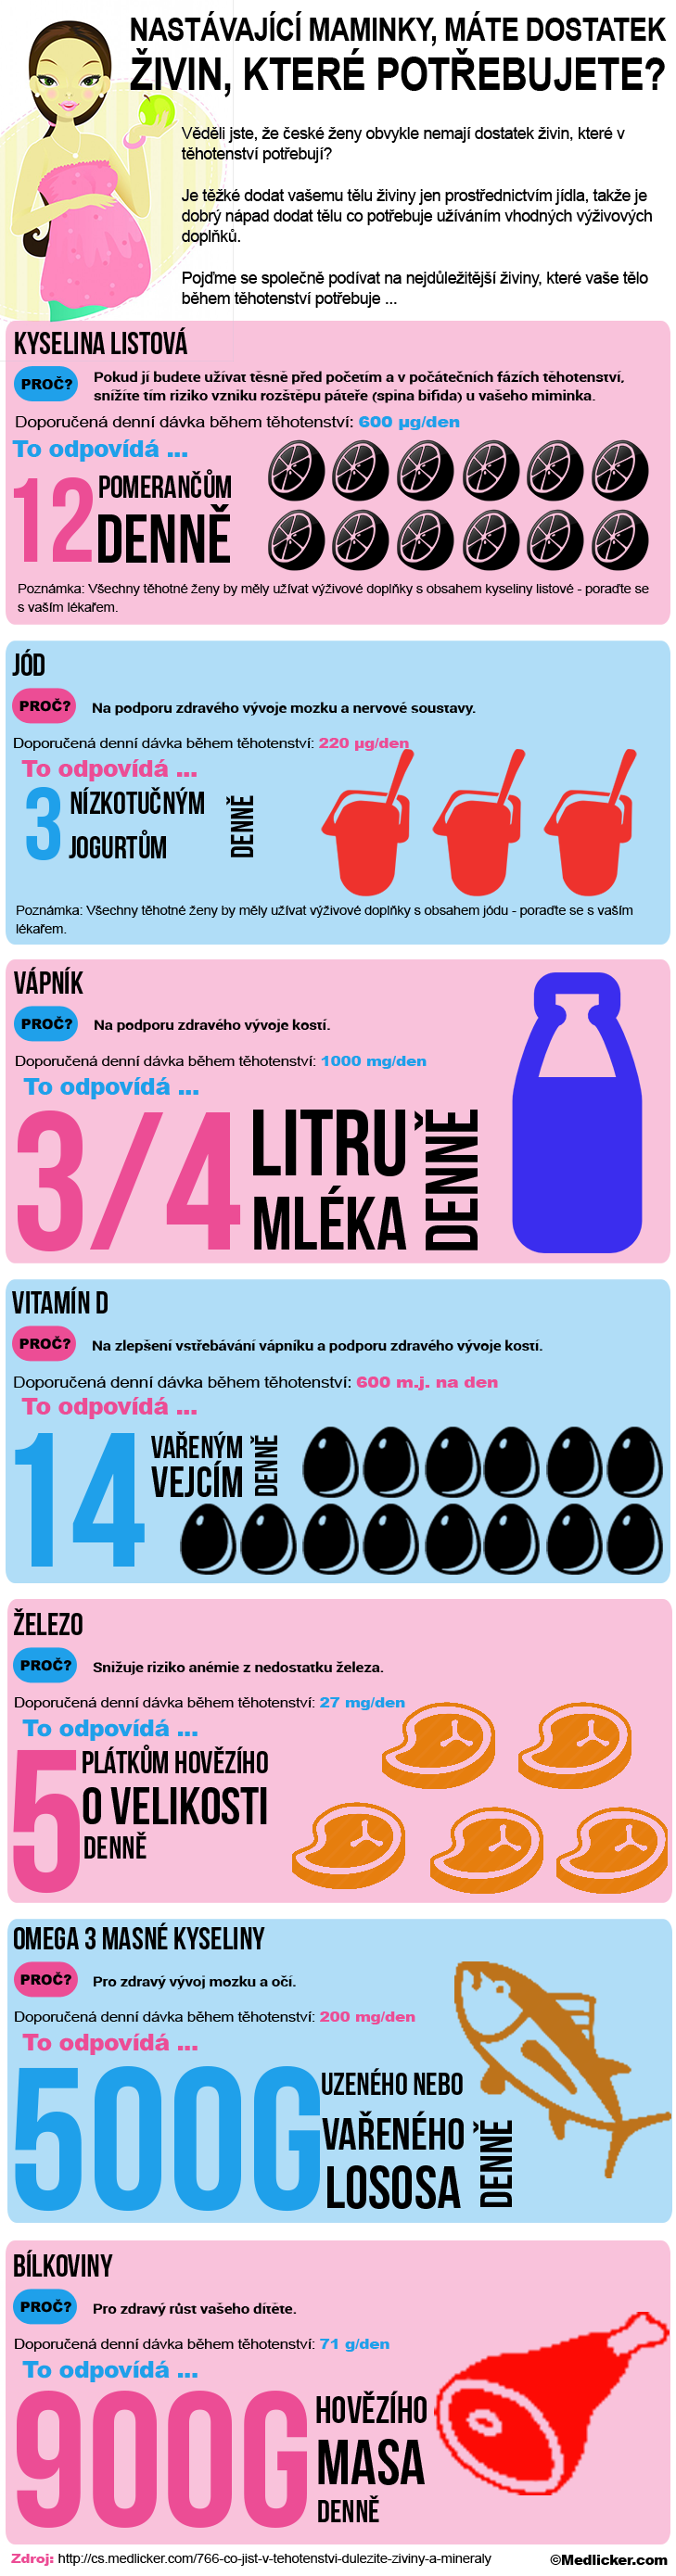 Živiny, které maminky v těhotenství potřebují - infografika